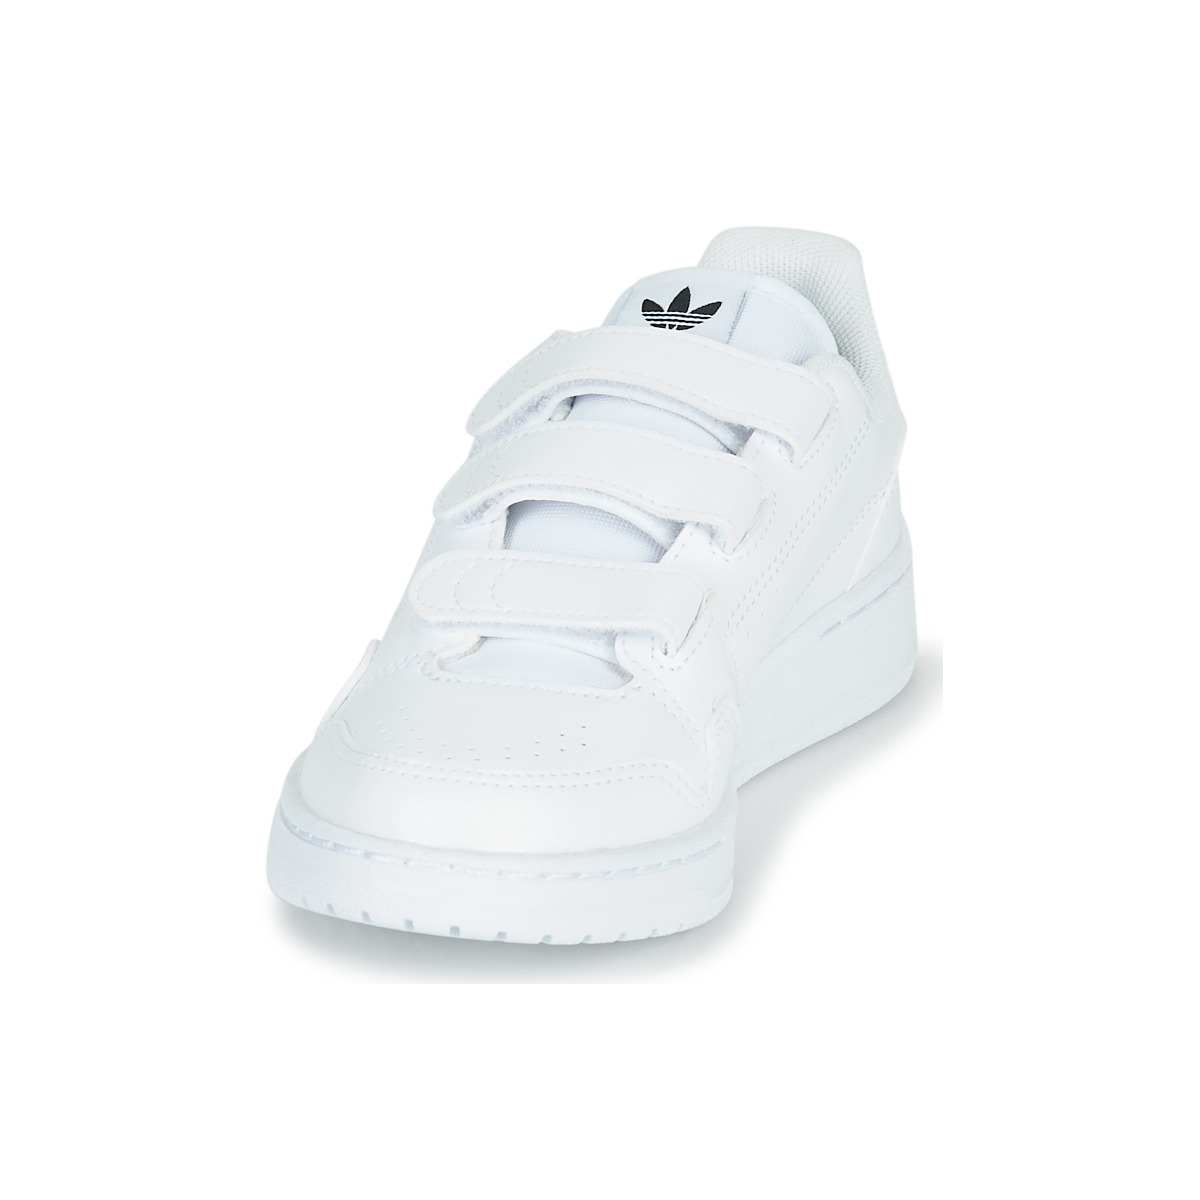 adidas Originals Blanc / Noir NY 92 CF C zeHVY96s